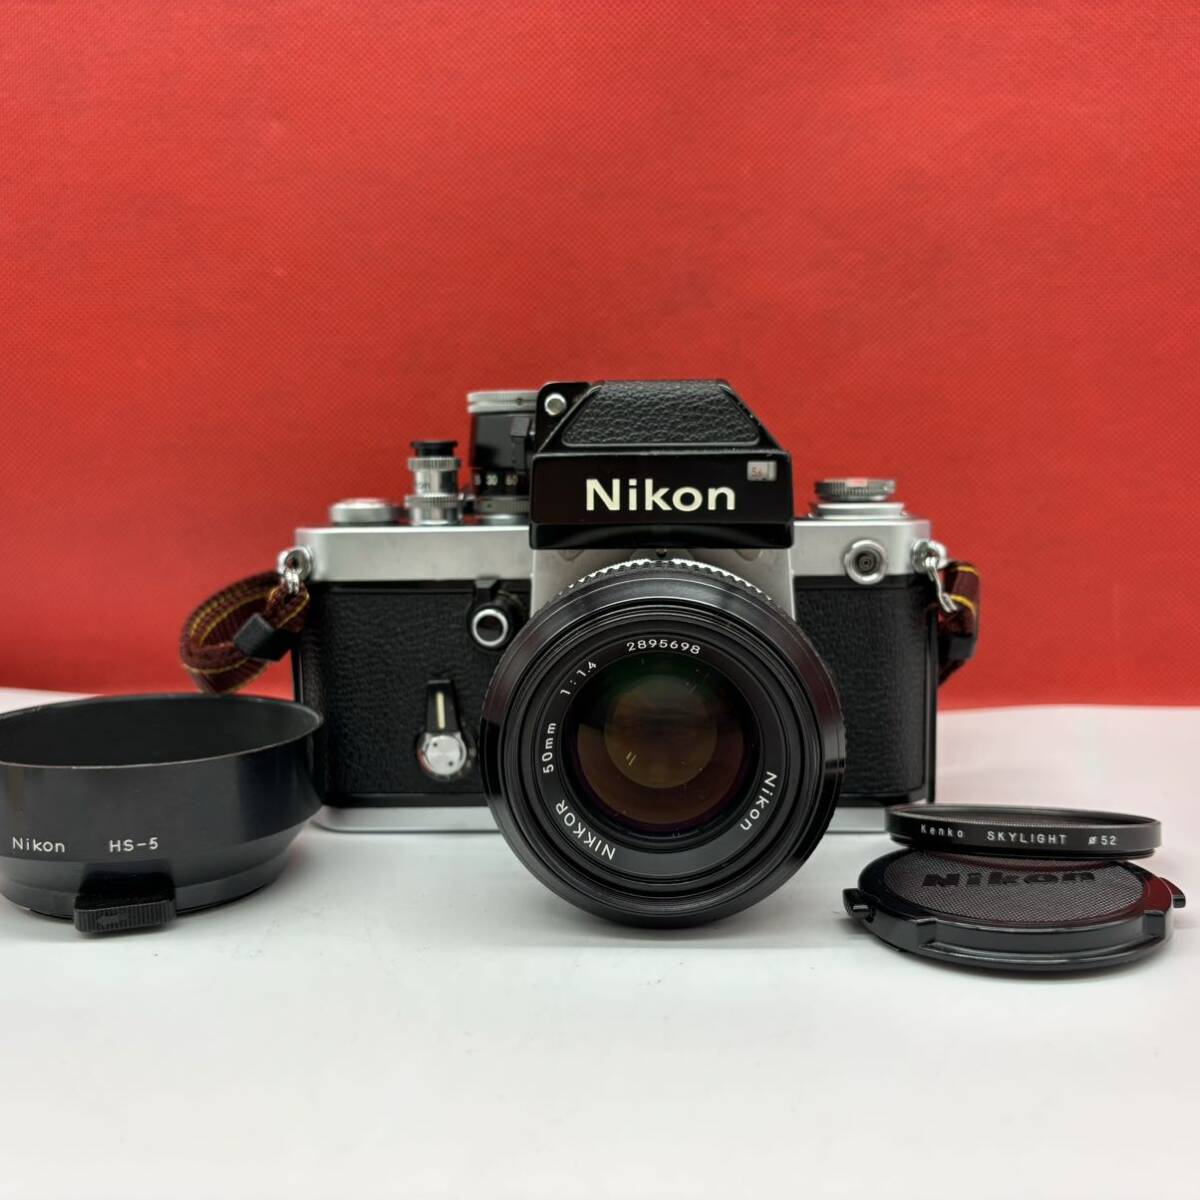 ◆ Nikon F2 フォトミック DP-1 フィルムカメラ 一眼レフカメラ ボディ NIKKOR 50mm F1.4 レンズ ジャンク ニコン_画像1